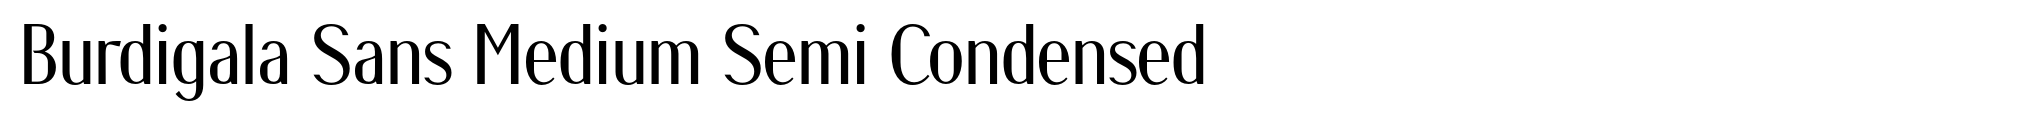 Burdigala Sans Medium Semi Condensed image